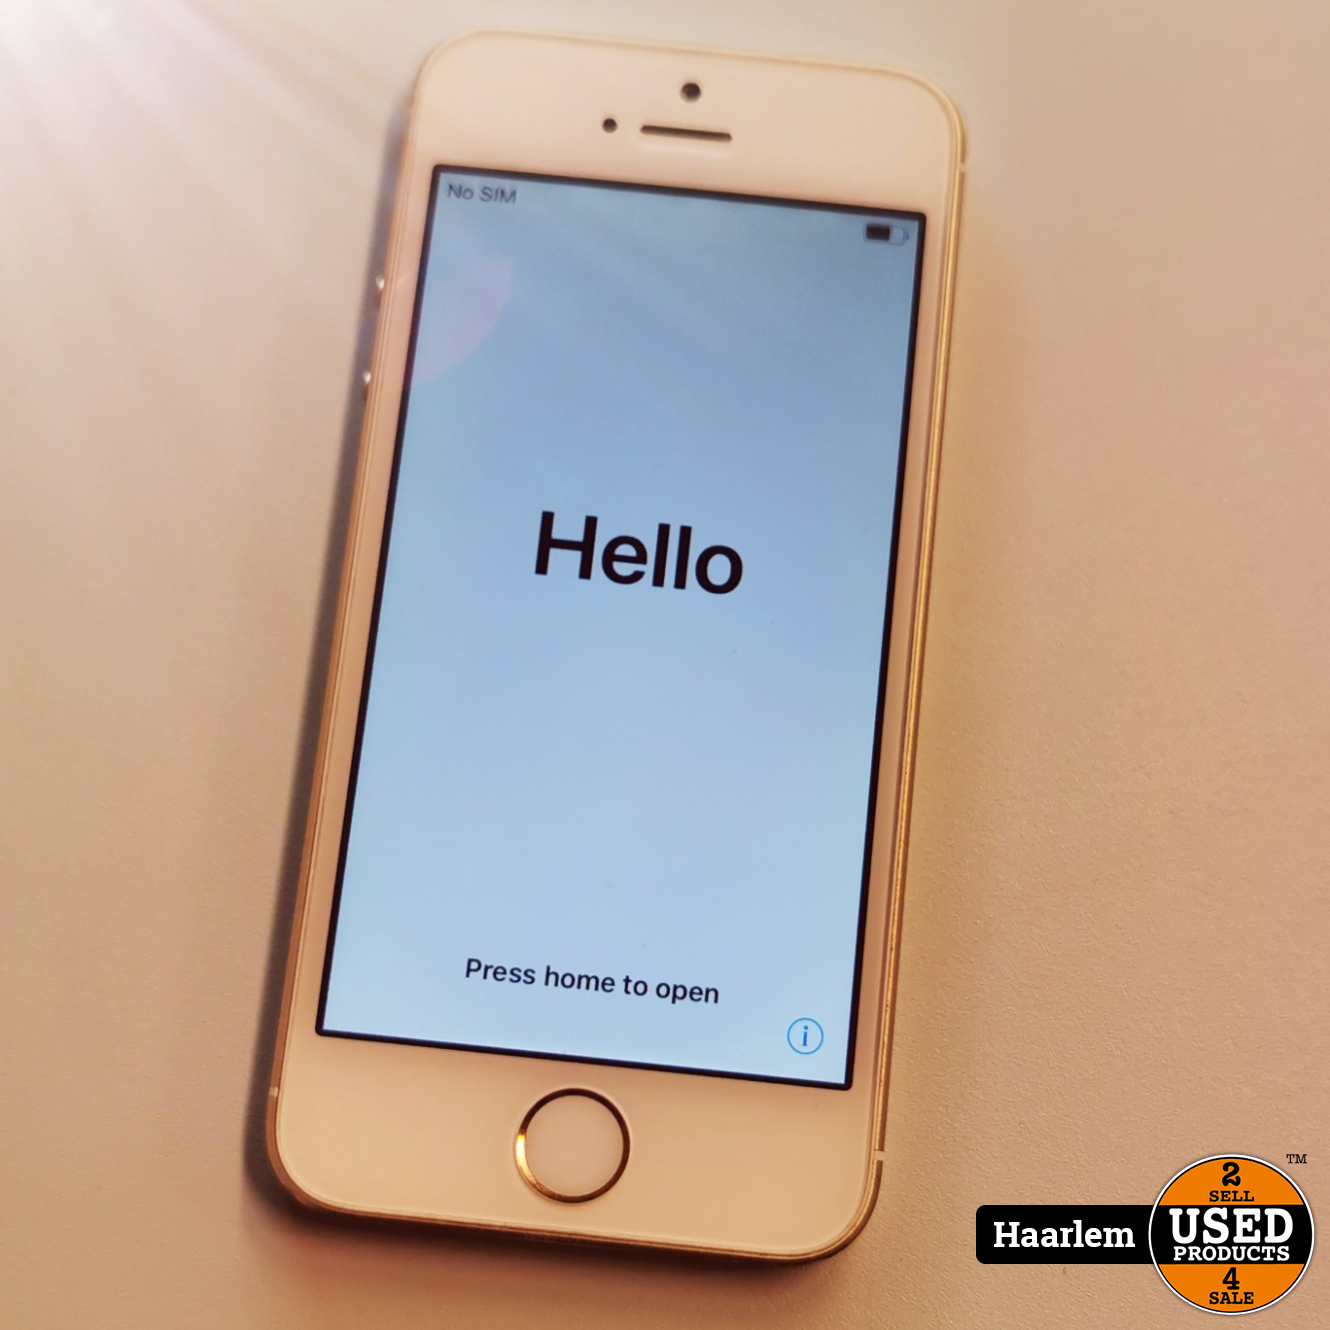 Veraangenamen prijs Treble Apple iPhone 5s 16gb gold zonder lader - Used Products Haarlem